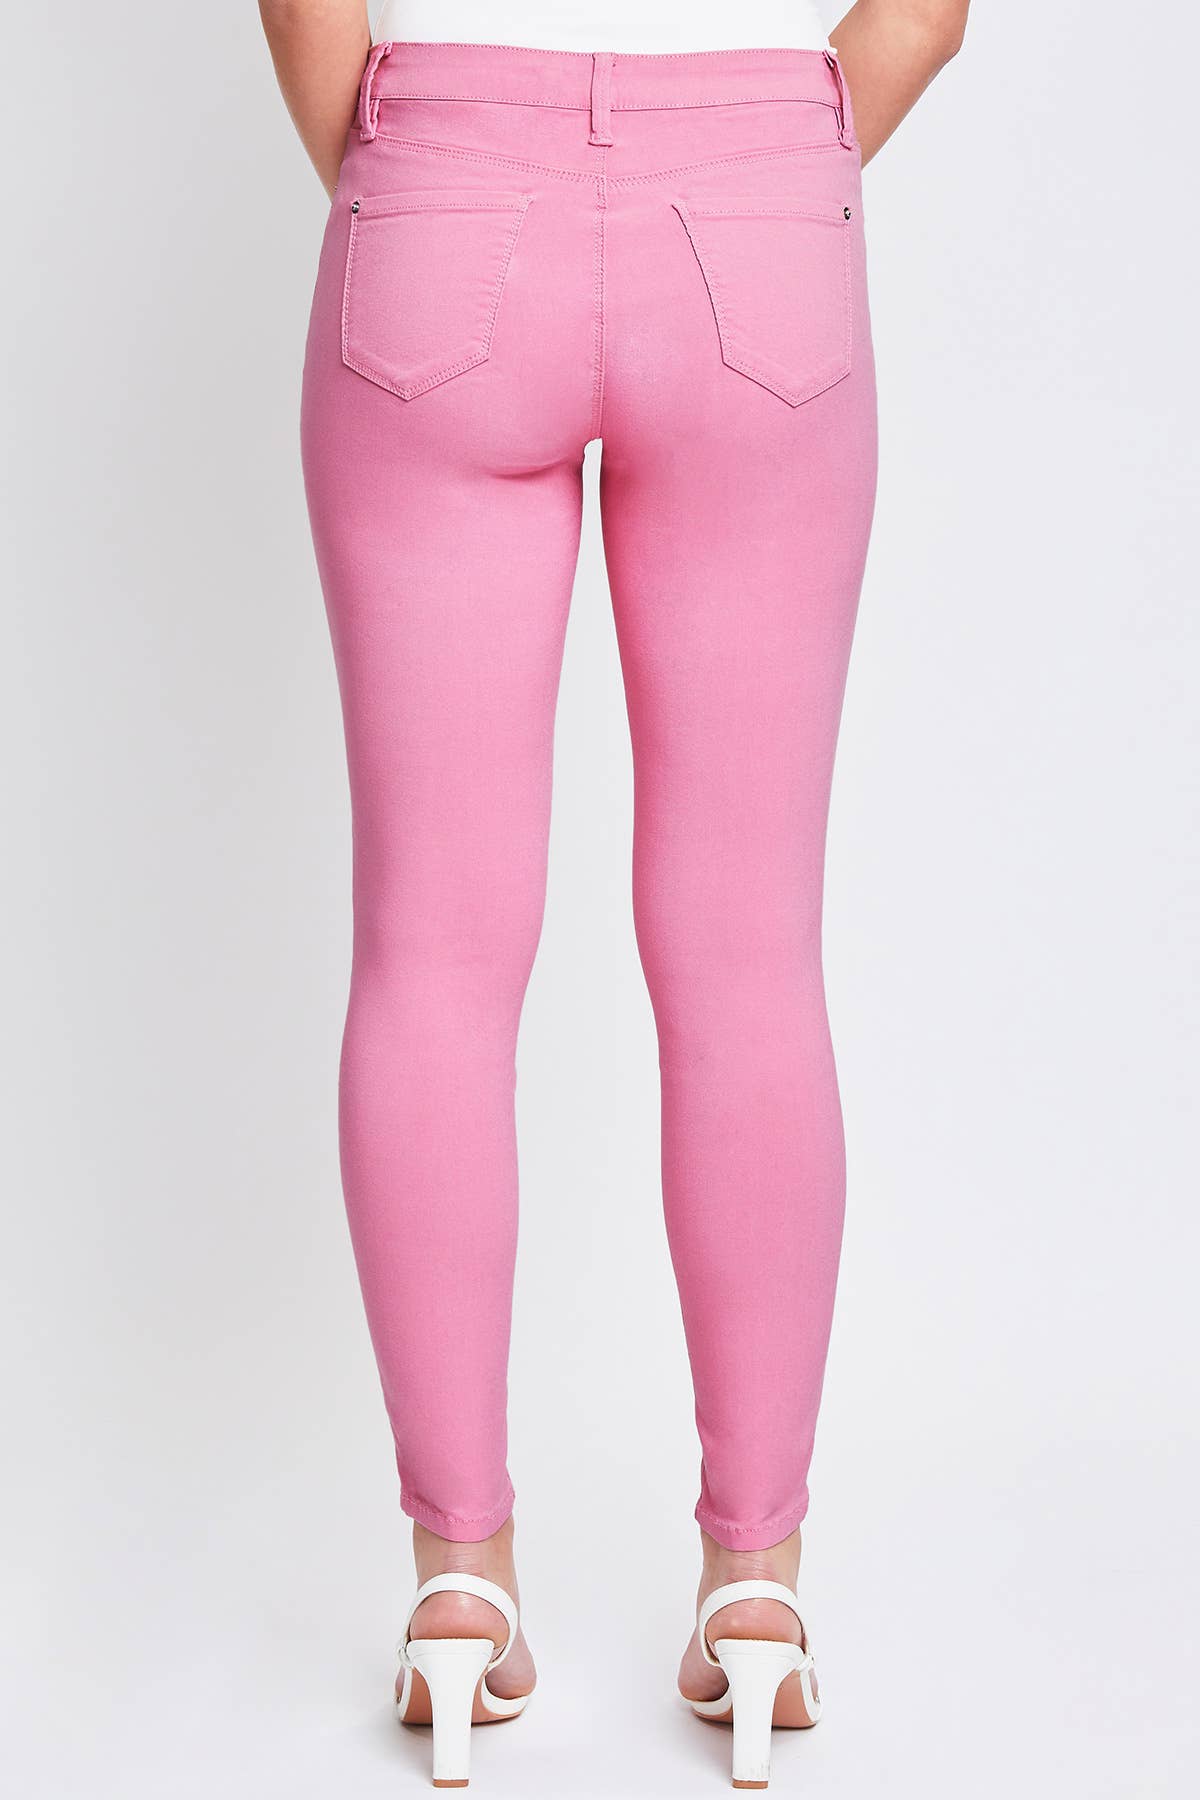 Hyperstretch Skinny Jean: Flamingo